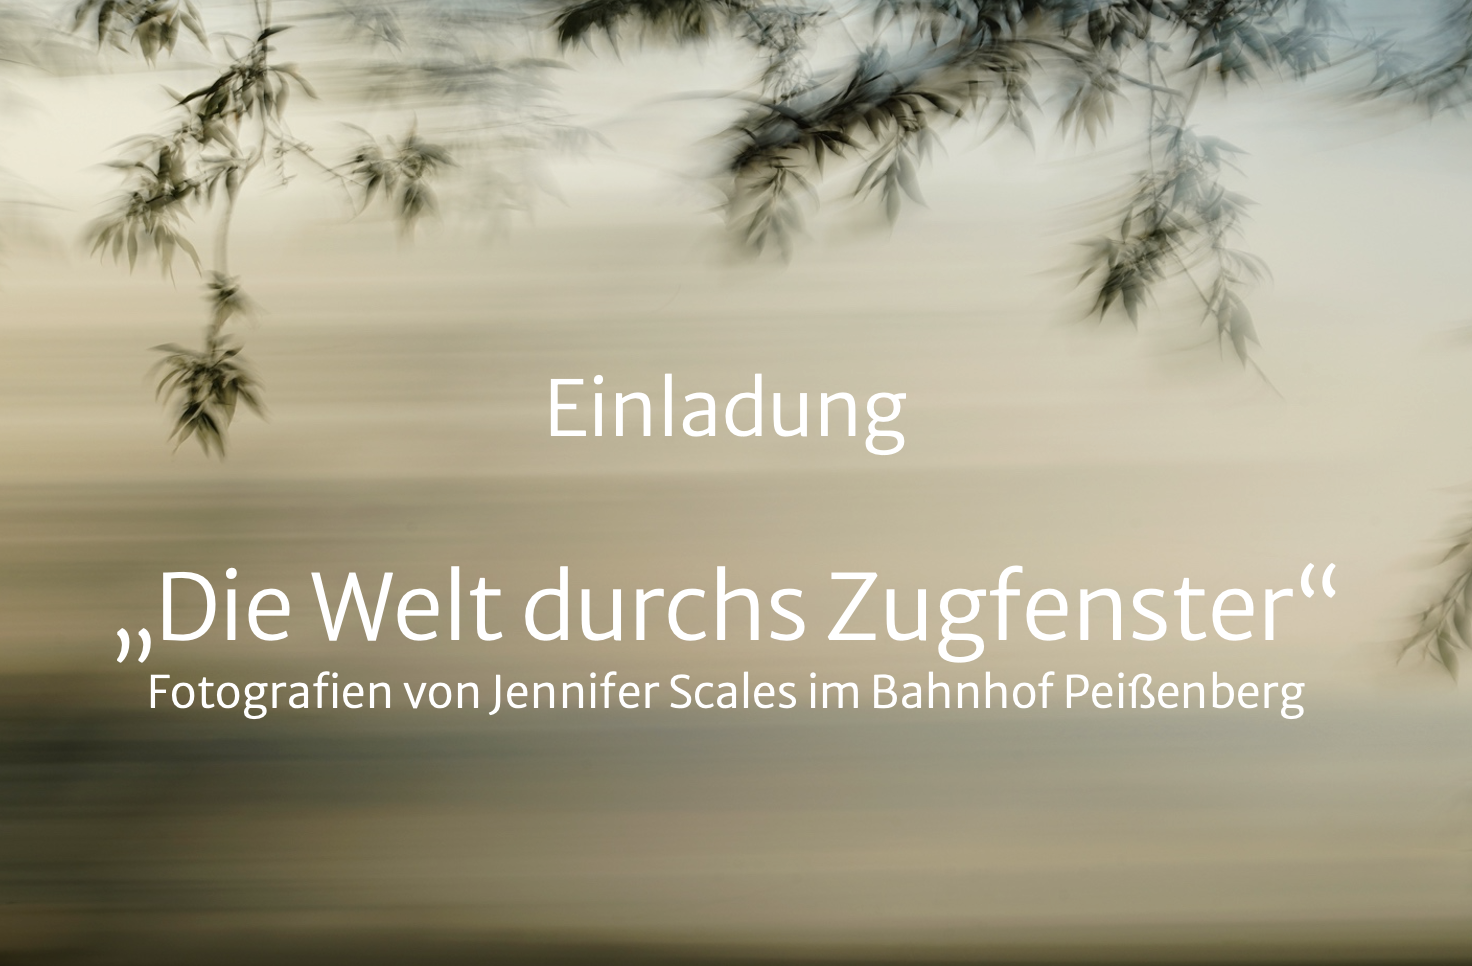 Auf dem Bild ist der Text "Einladung - Die Welt durchs Zugfenster - Fotografien von Jennifer Scales im Bahnhof Peißenberg" zu lesen